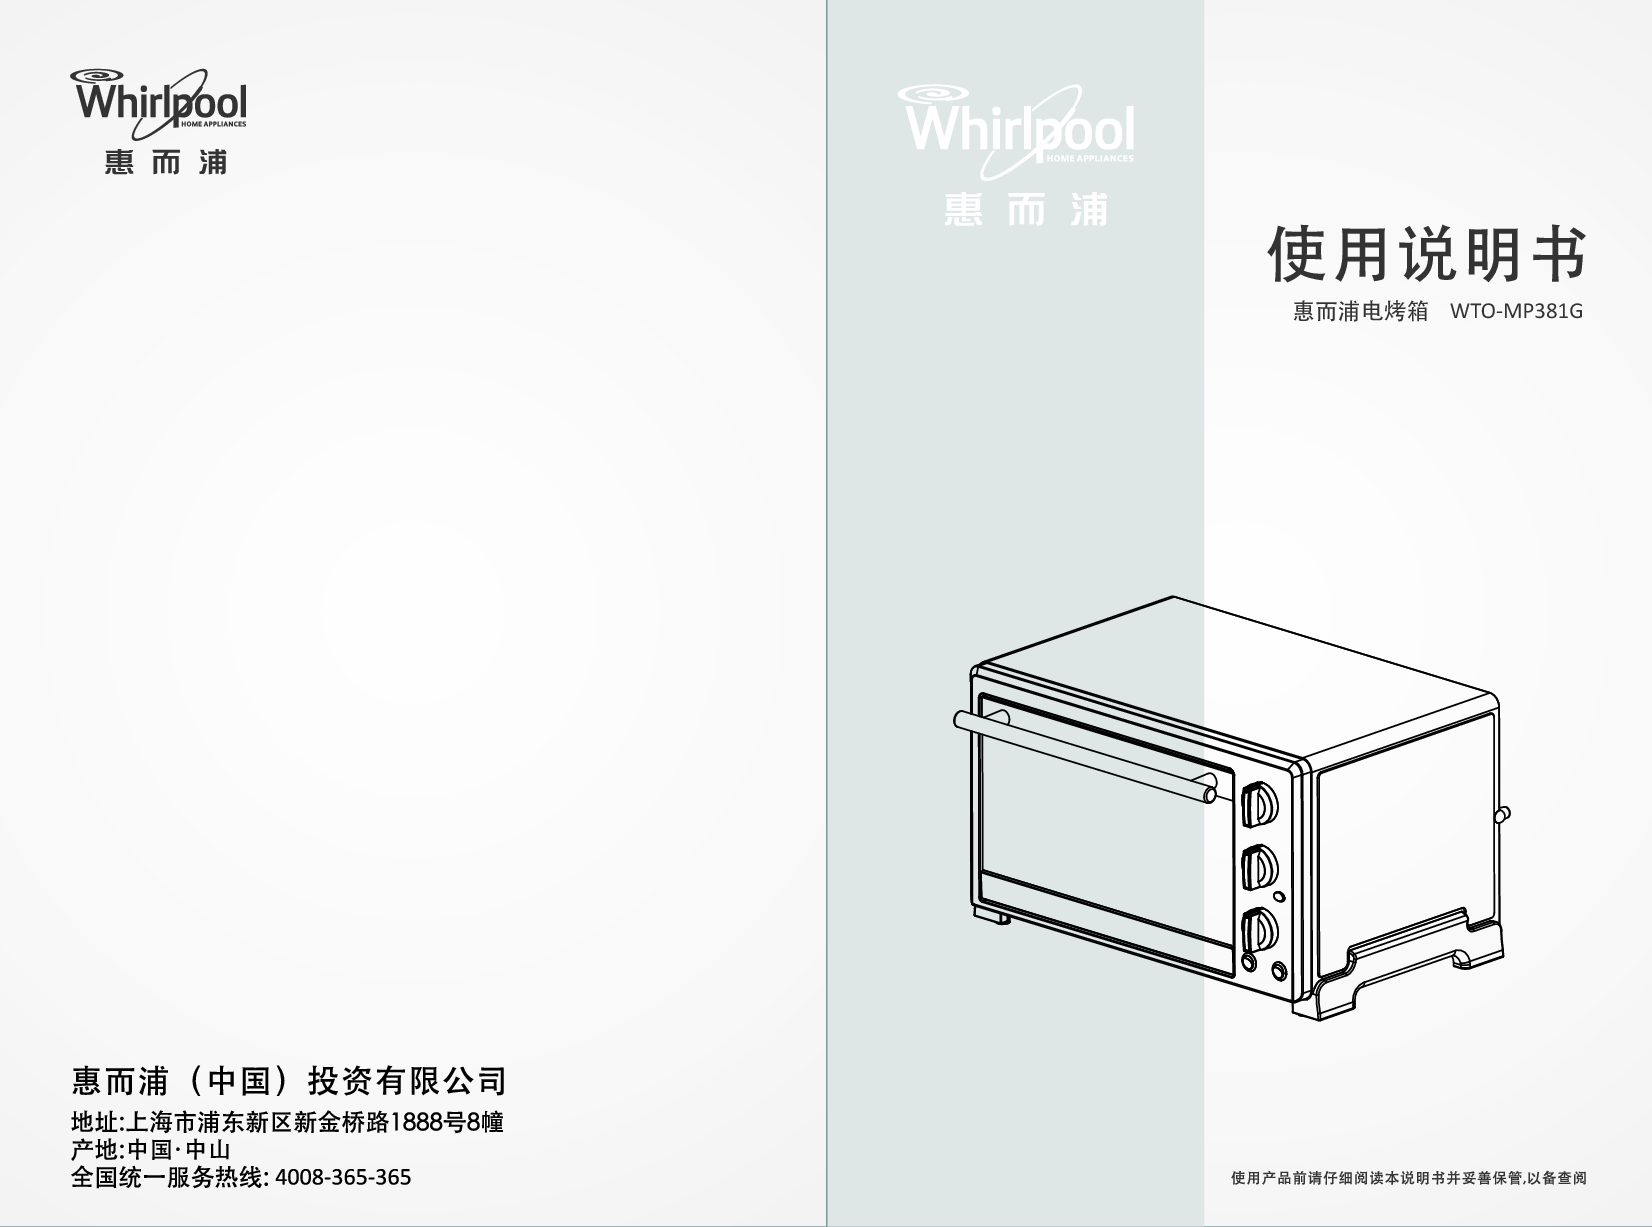 惠而浦 Whirlpool WTO-MP381G 使用说明书 封面